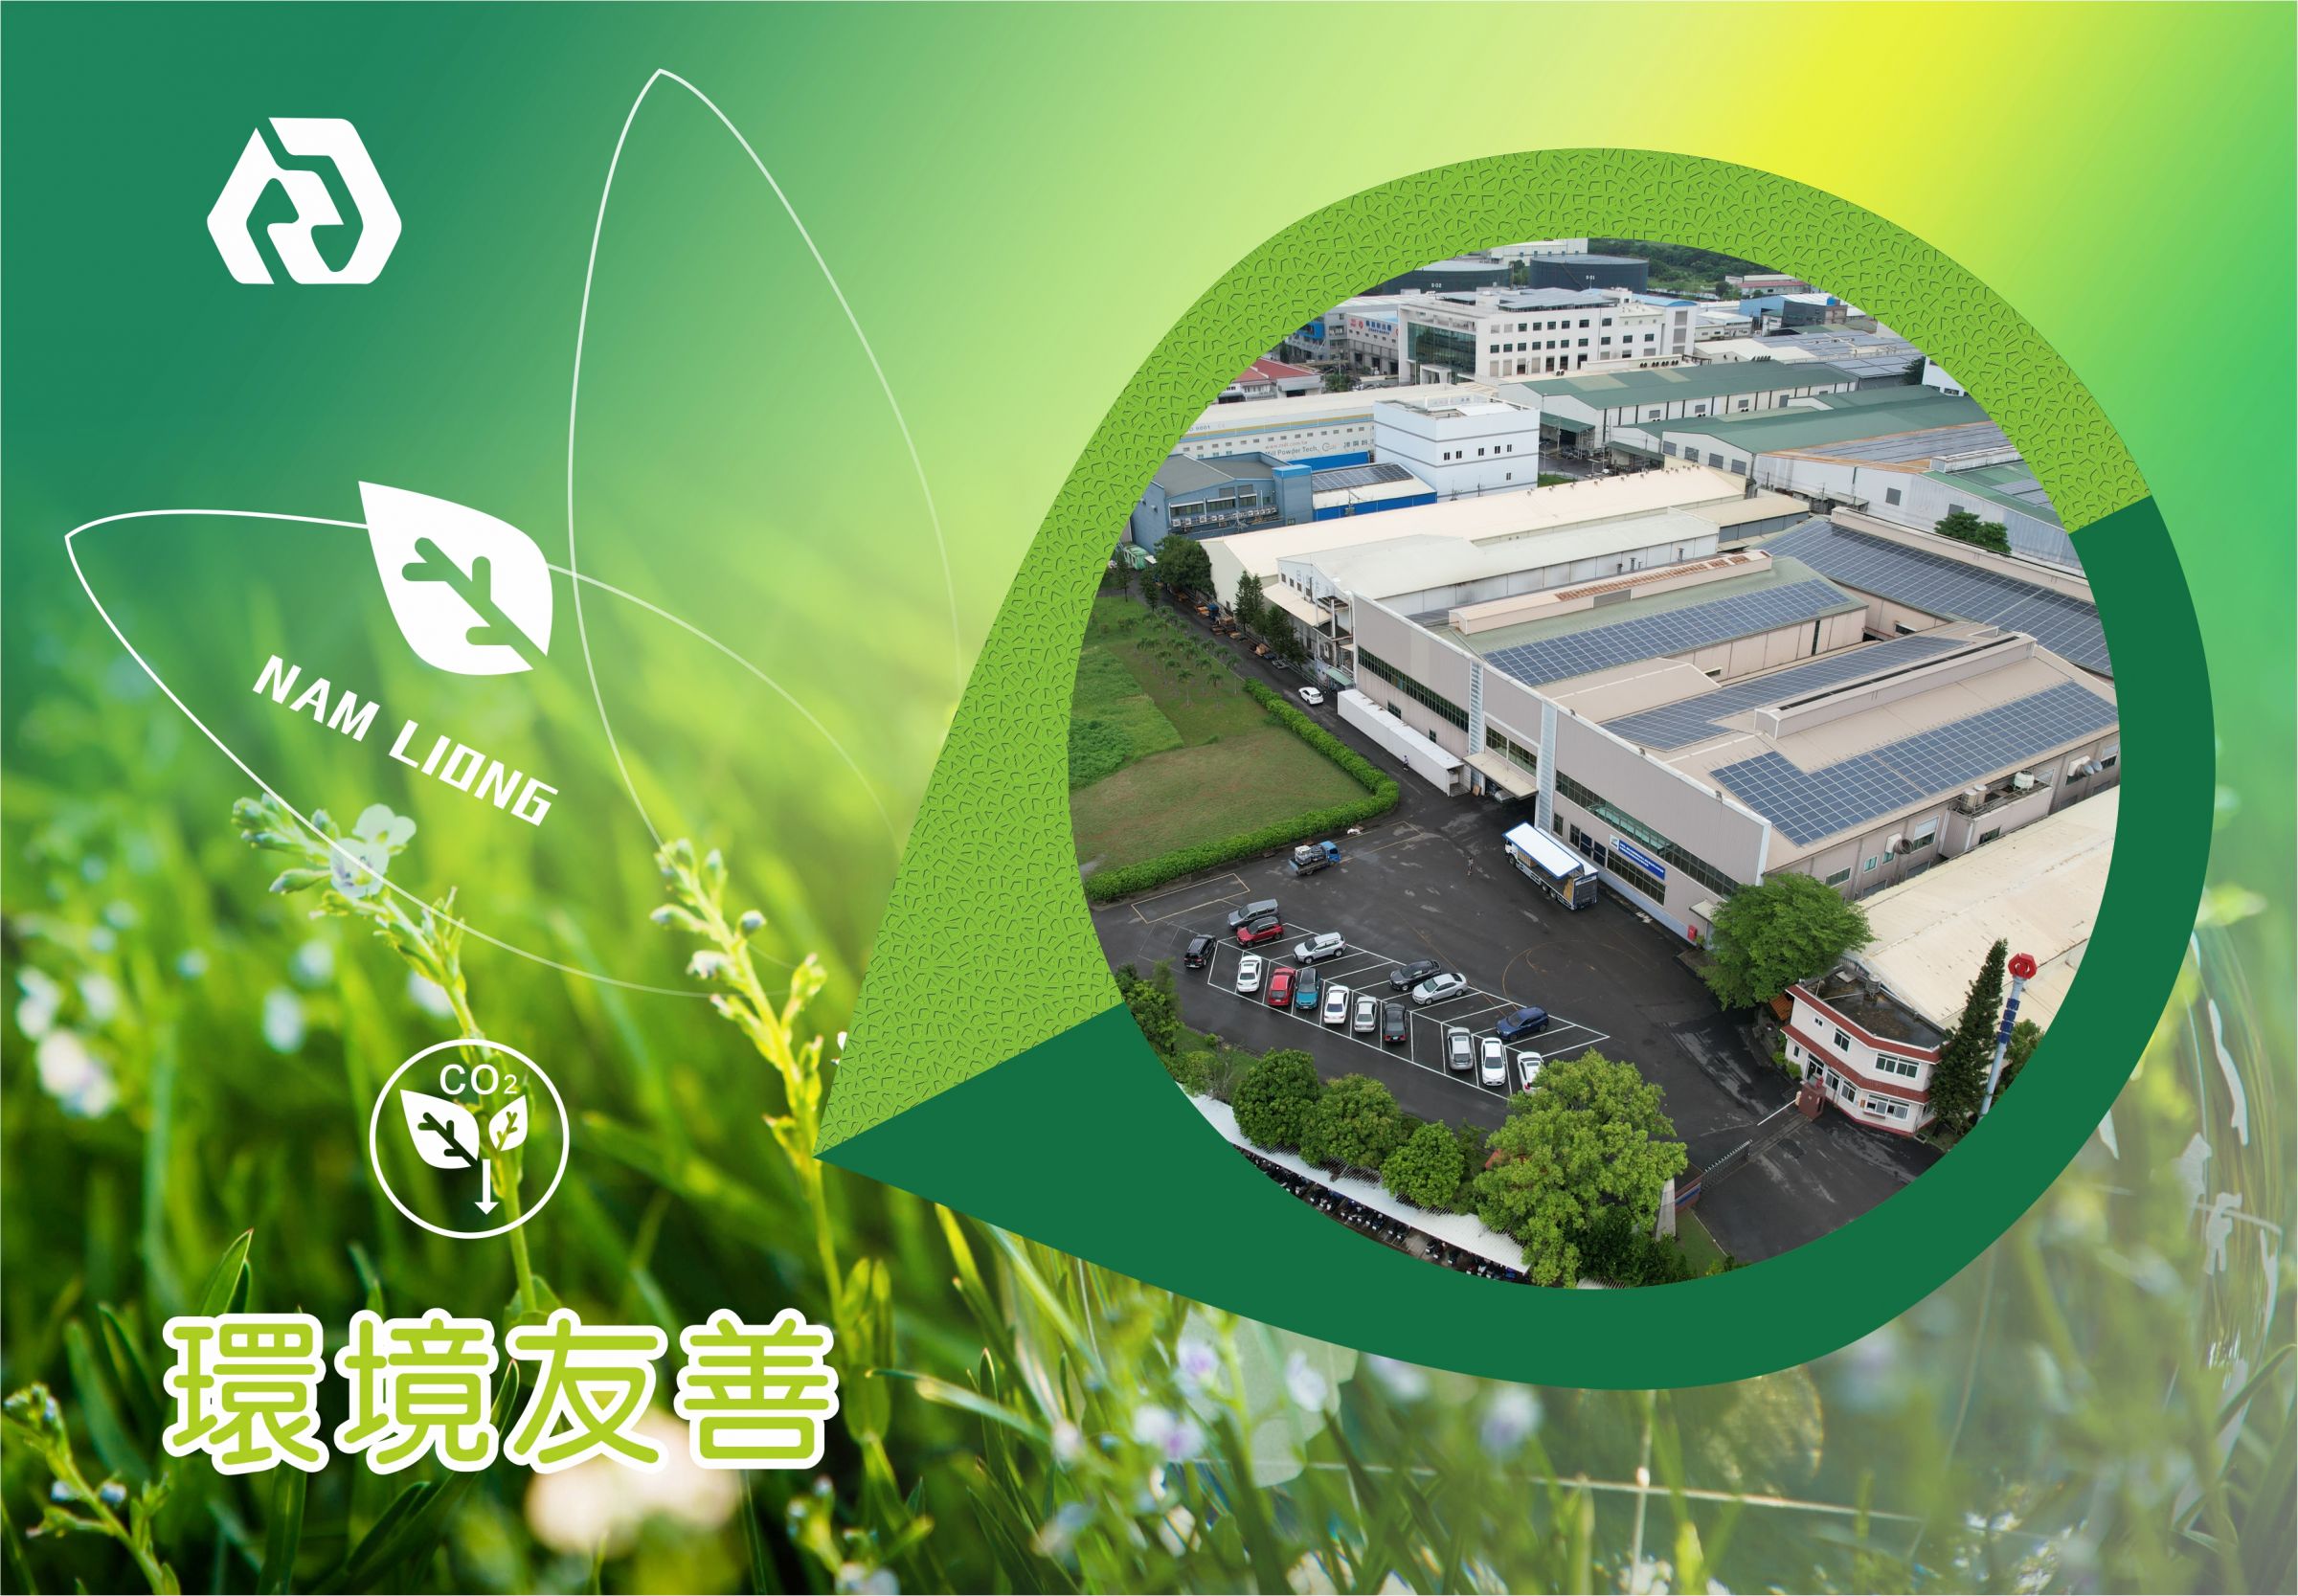 Protección del medio ambiente y sostenibilidad de Nam Liong Global